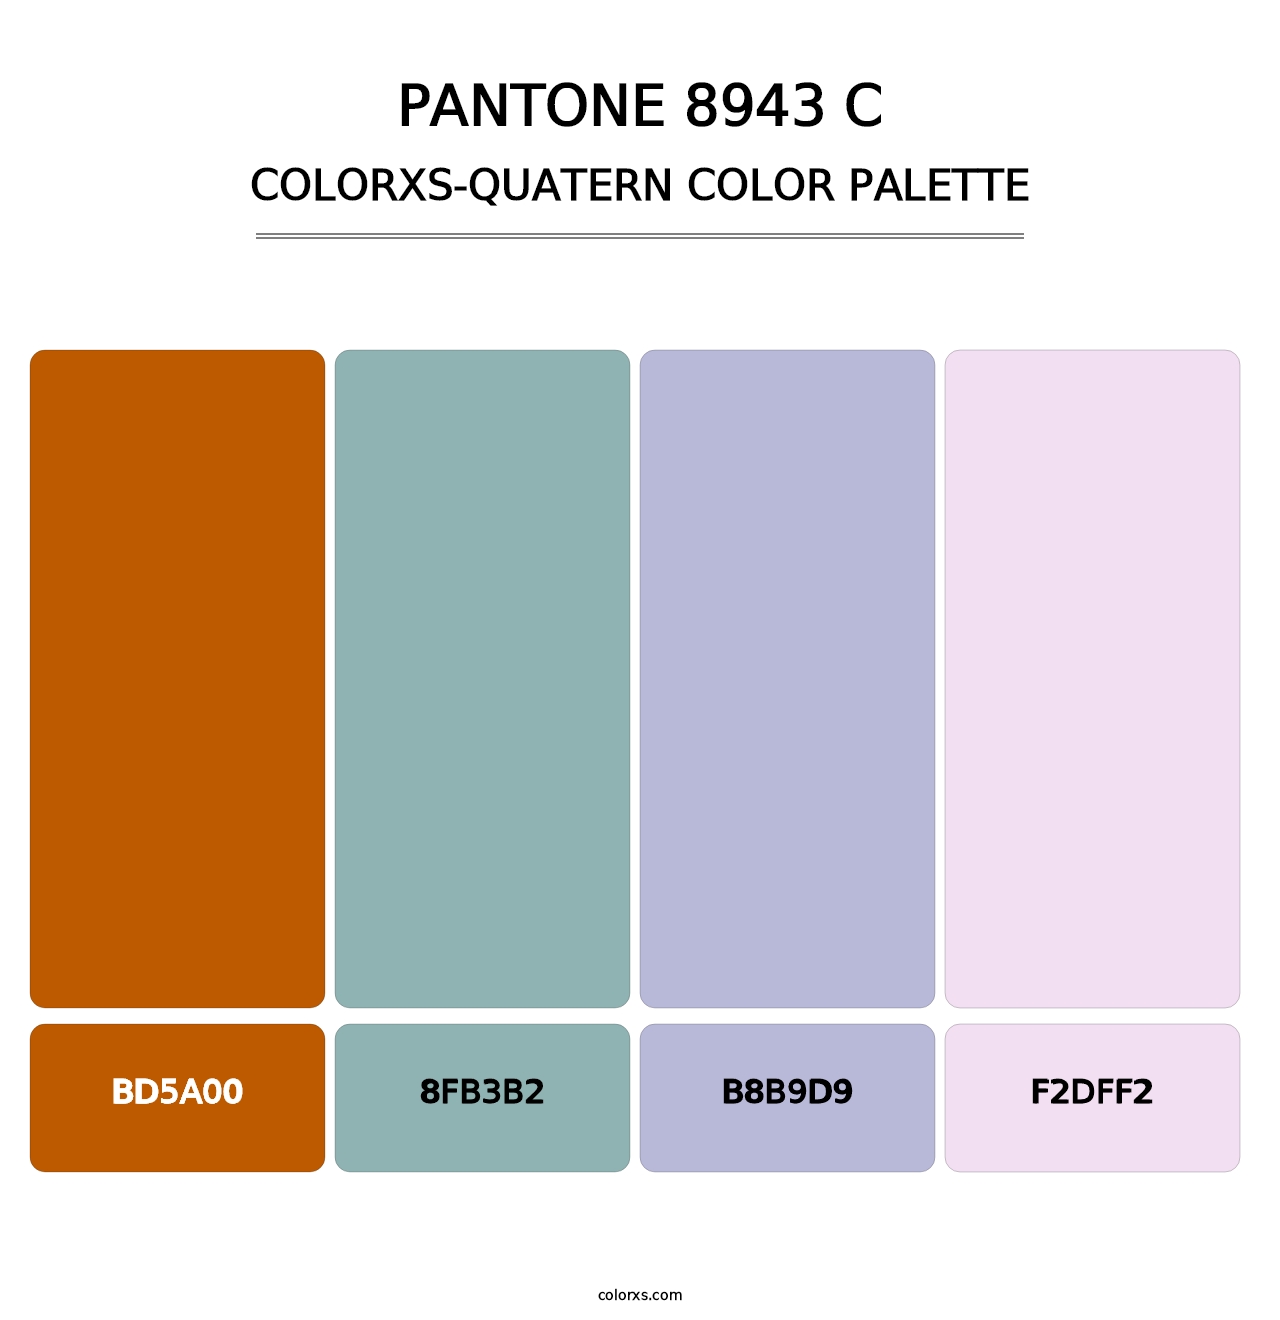 PANTONE 8943 C - Colorxs Quatern Palette